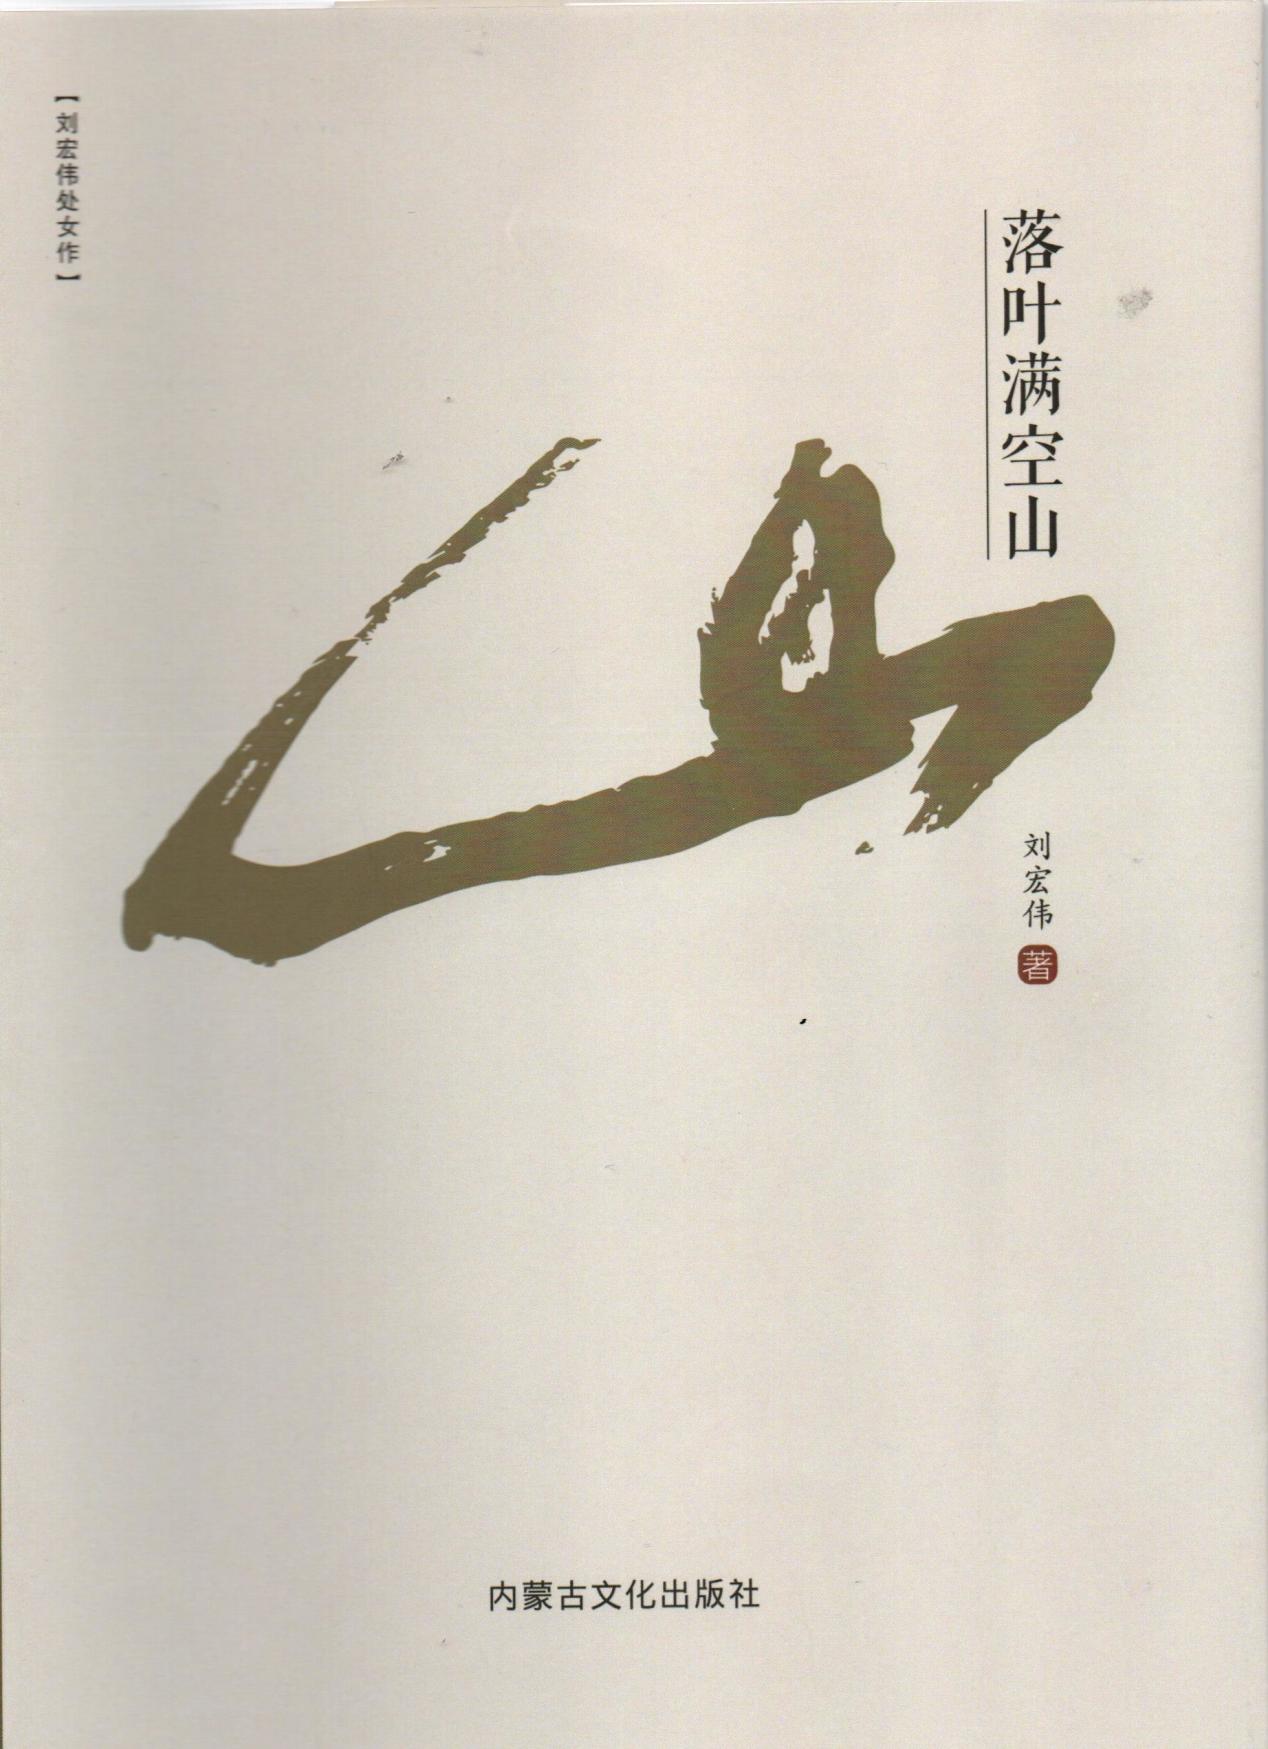 刘宏伟律师首部散文集《落叶满空山》正式上市发行